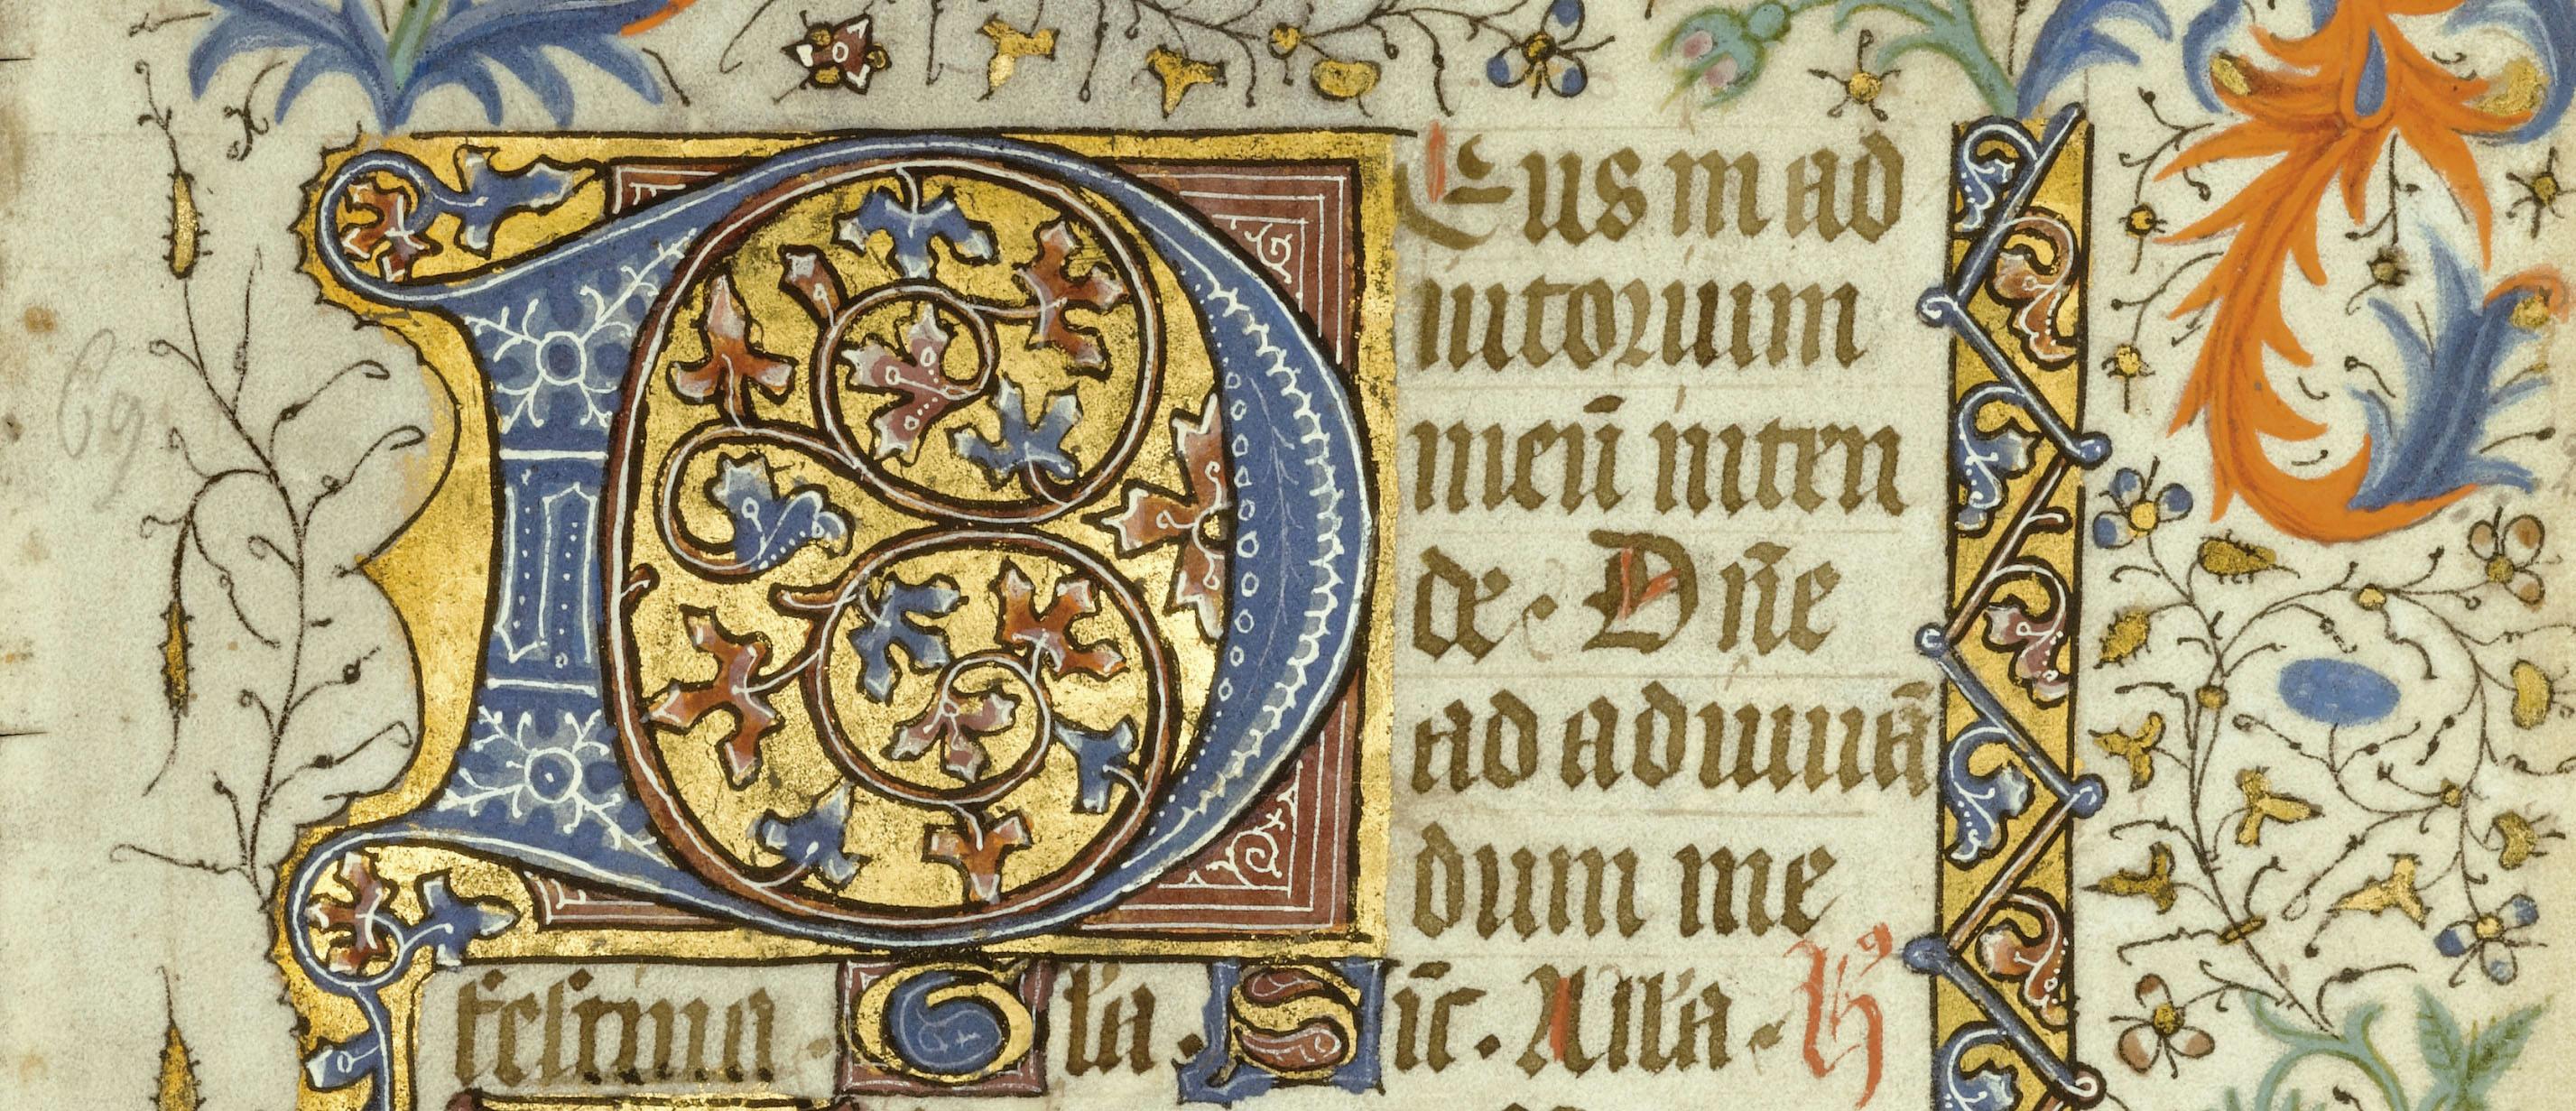 Responsive Illuminated Manuscript